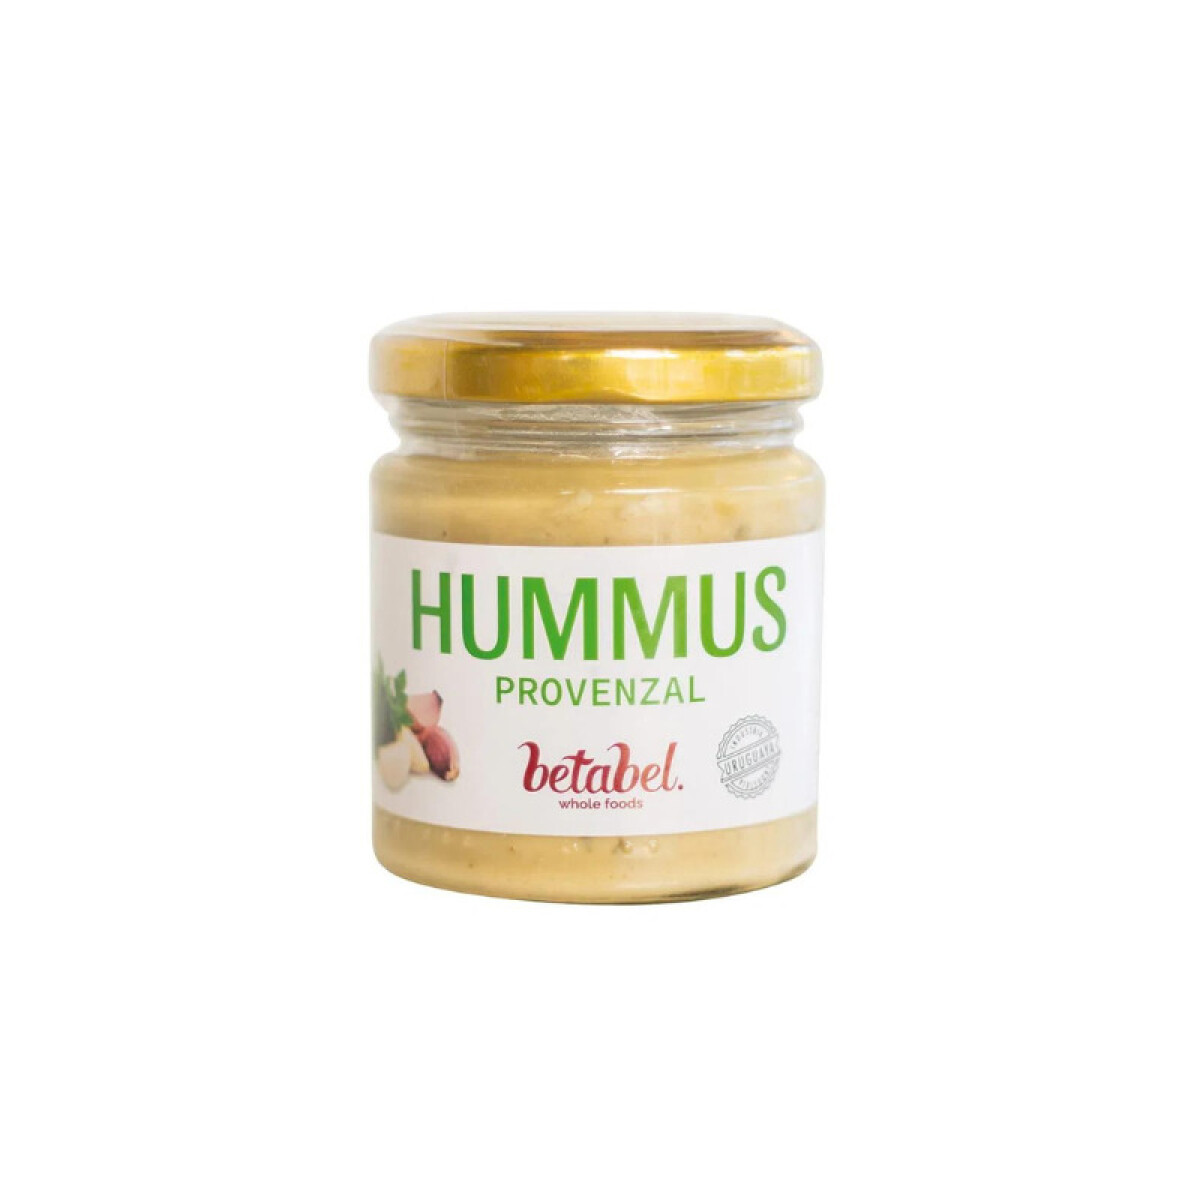 Hummus Betabel sabor provenzal - 175 gr 